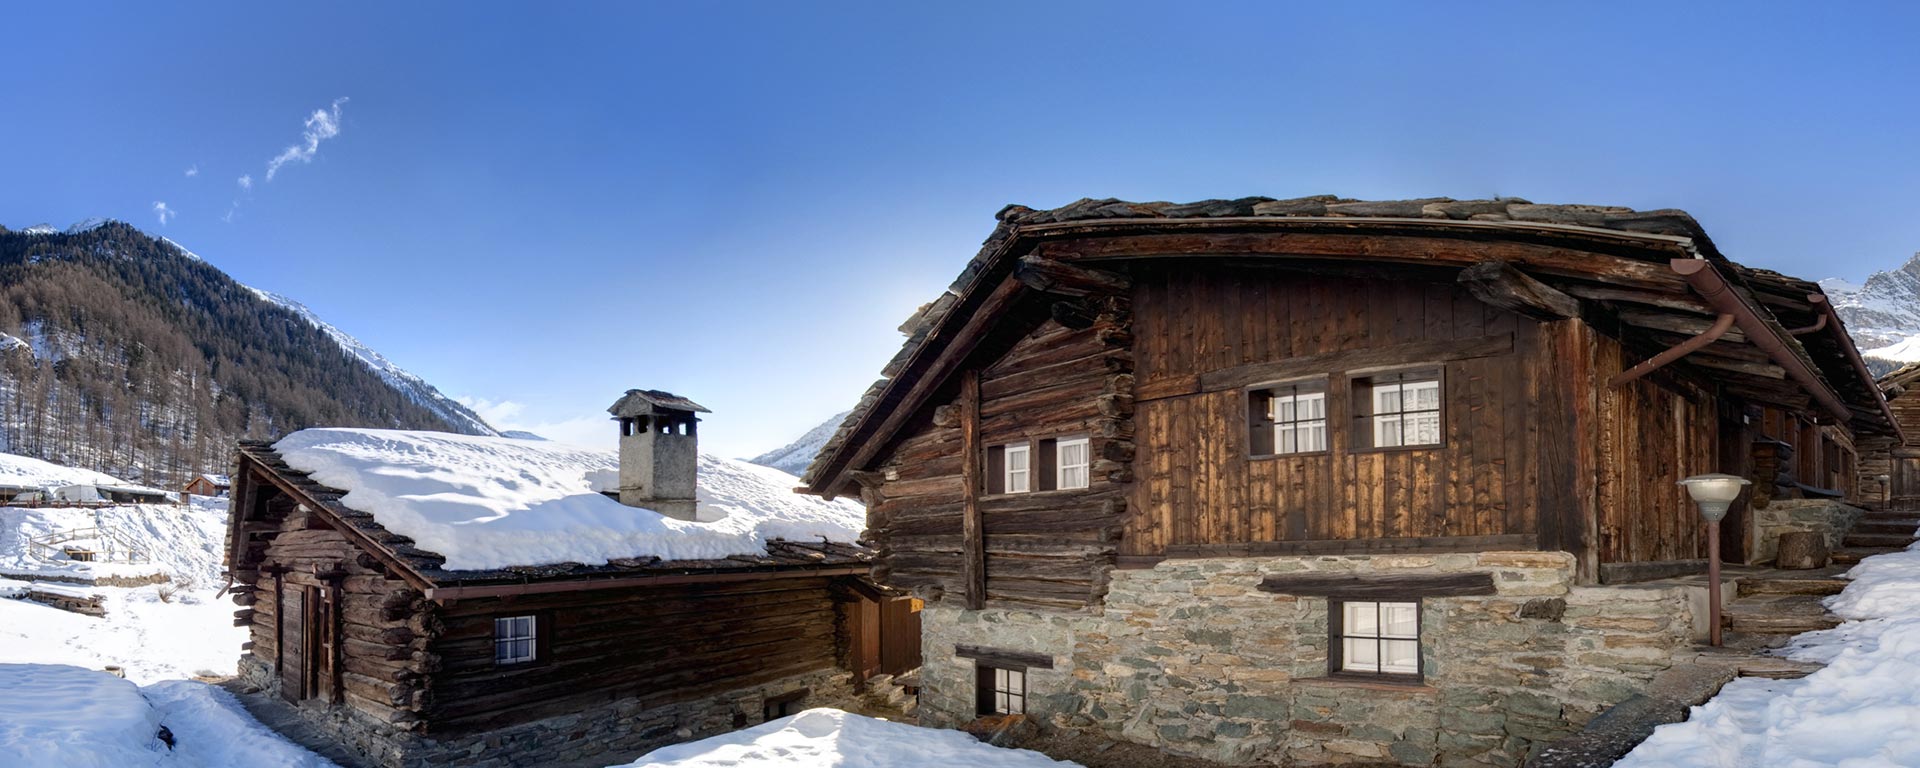 Accogliente rifugio di montagna in inverno con tetto in scandole di legno ricoperto di neve vicino a San Vigilio di Marebbe